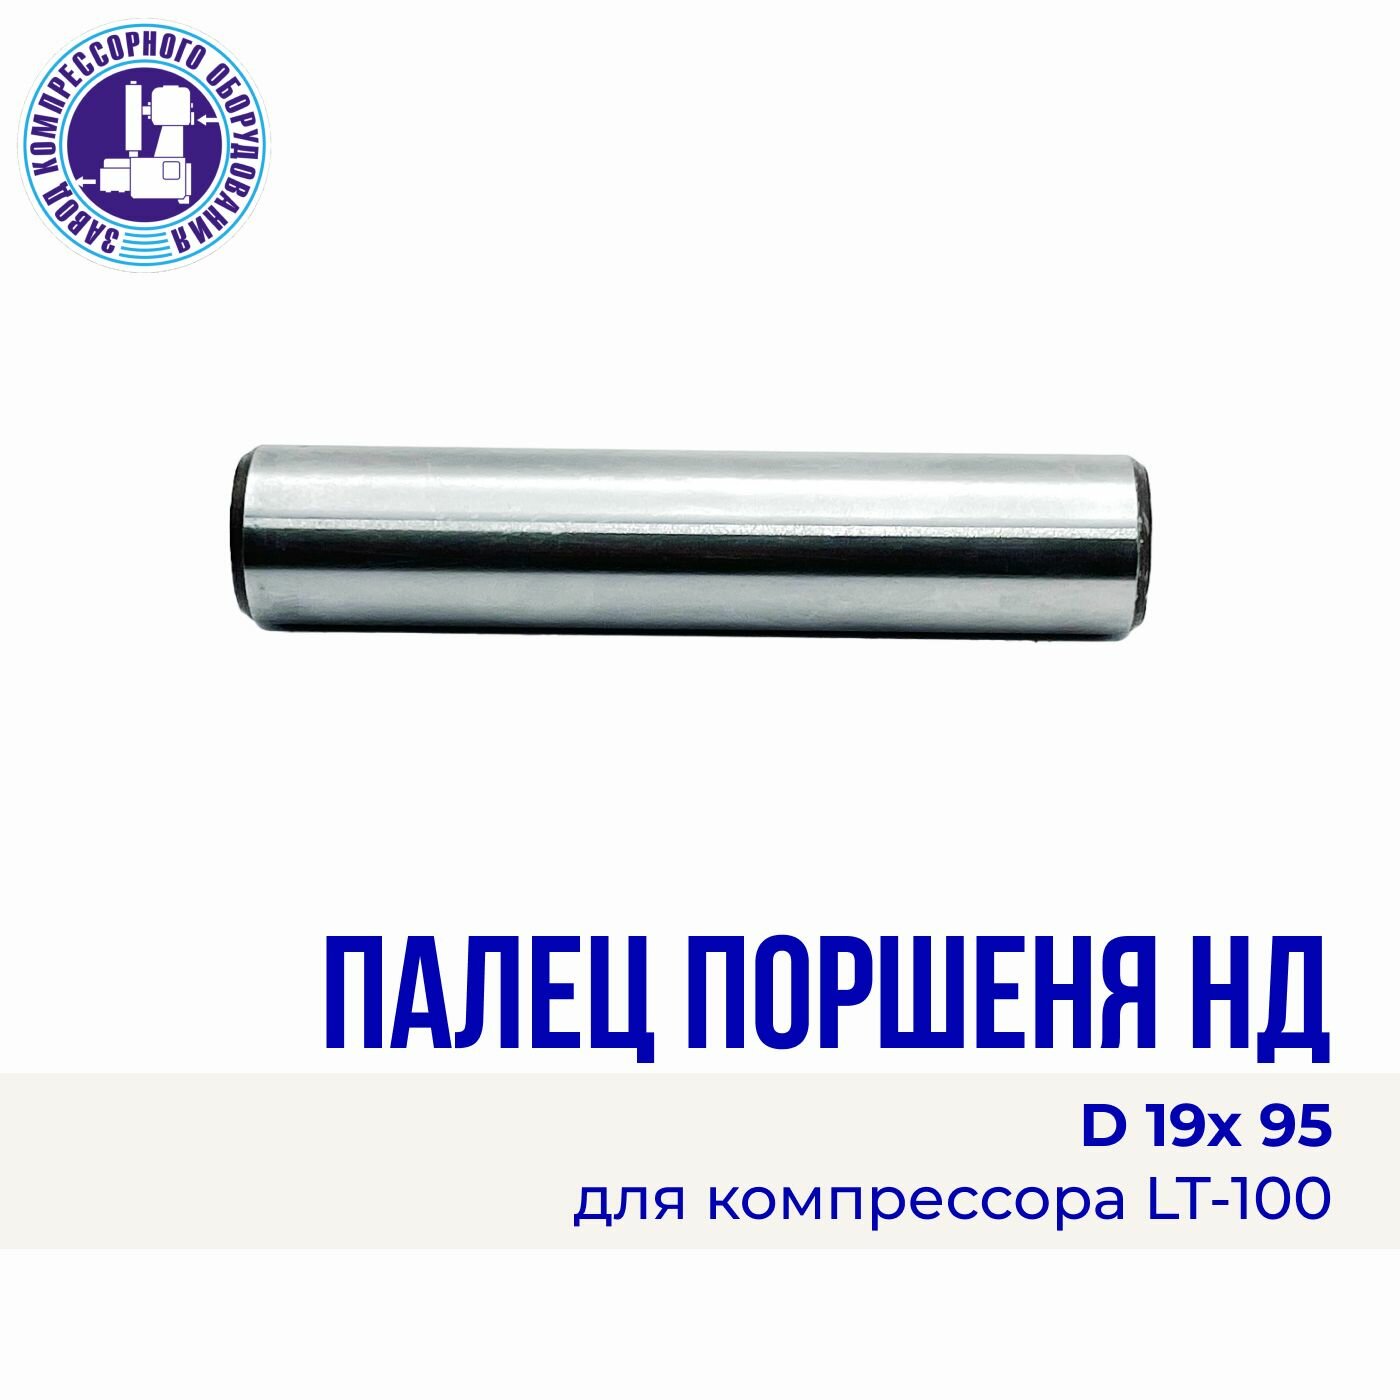 Палец поршня НД D19 х 95 мм. компрессора LT 100 сталь Энергоресурс